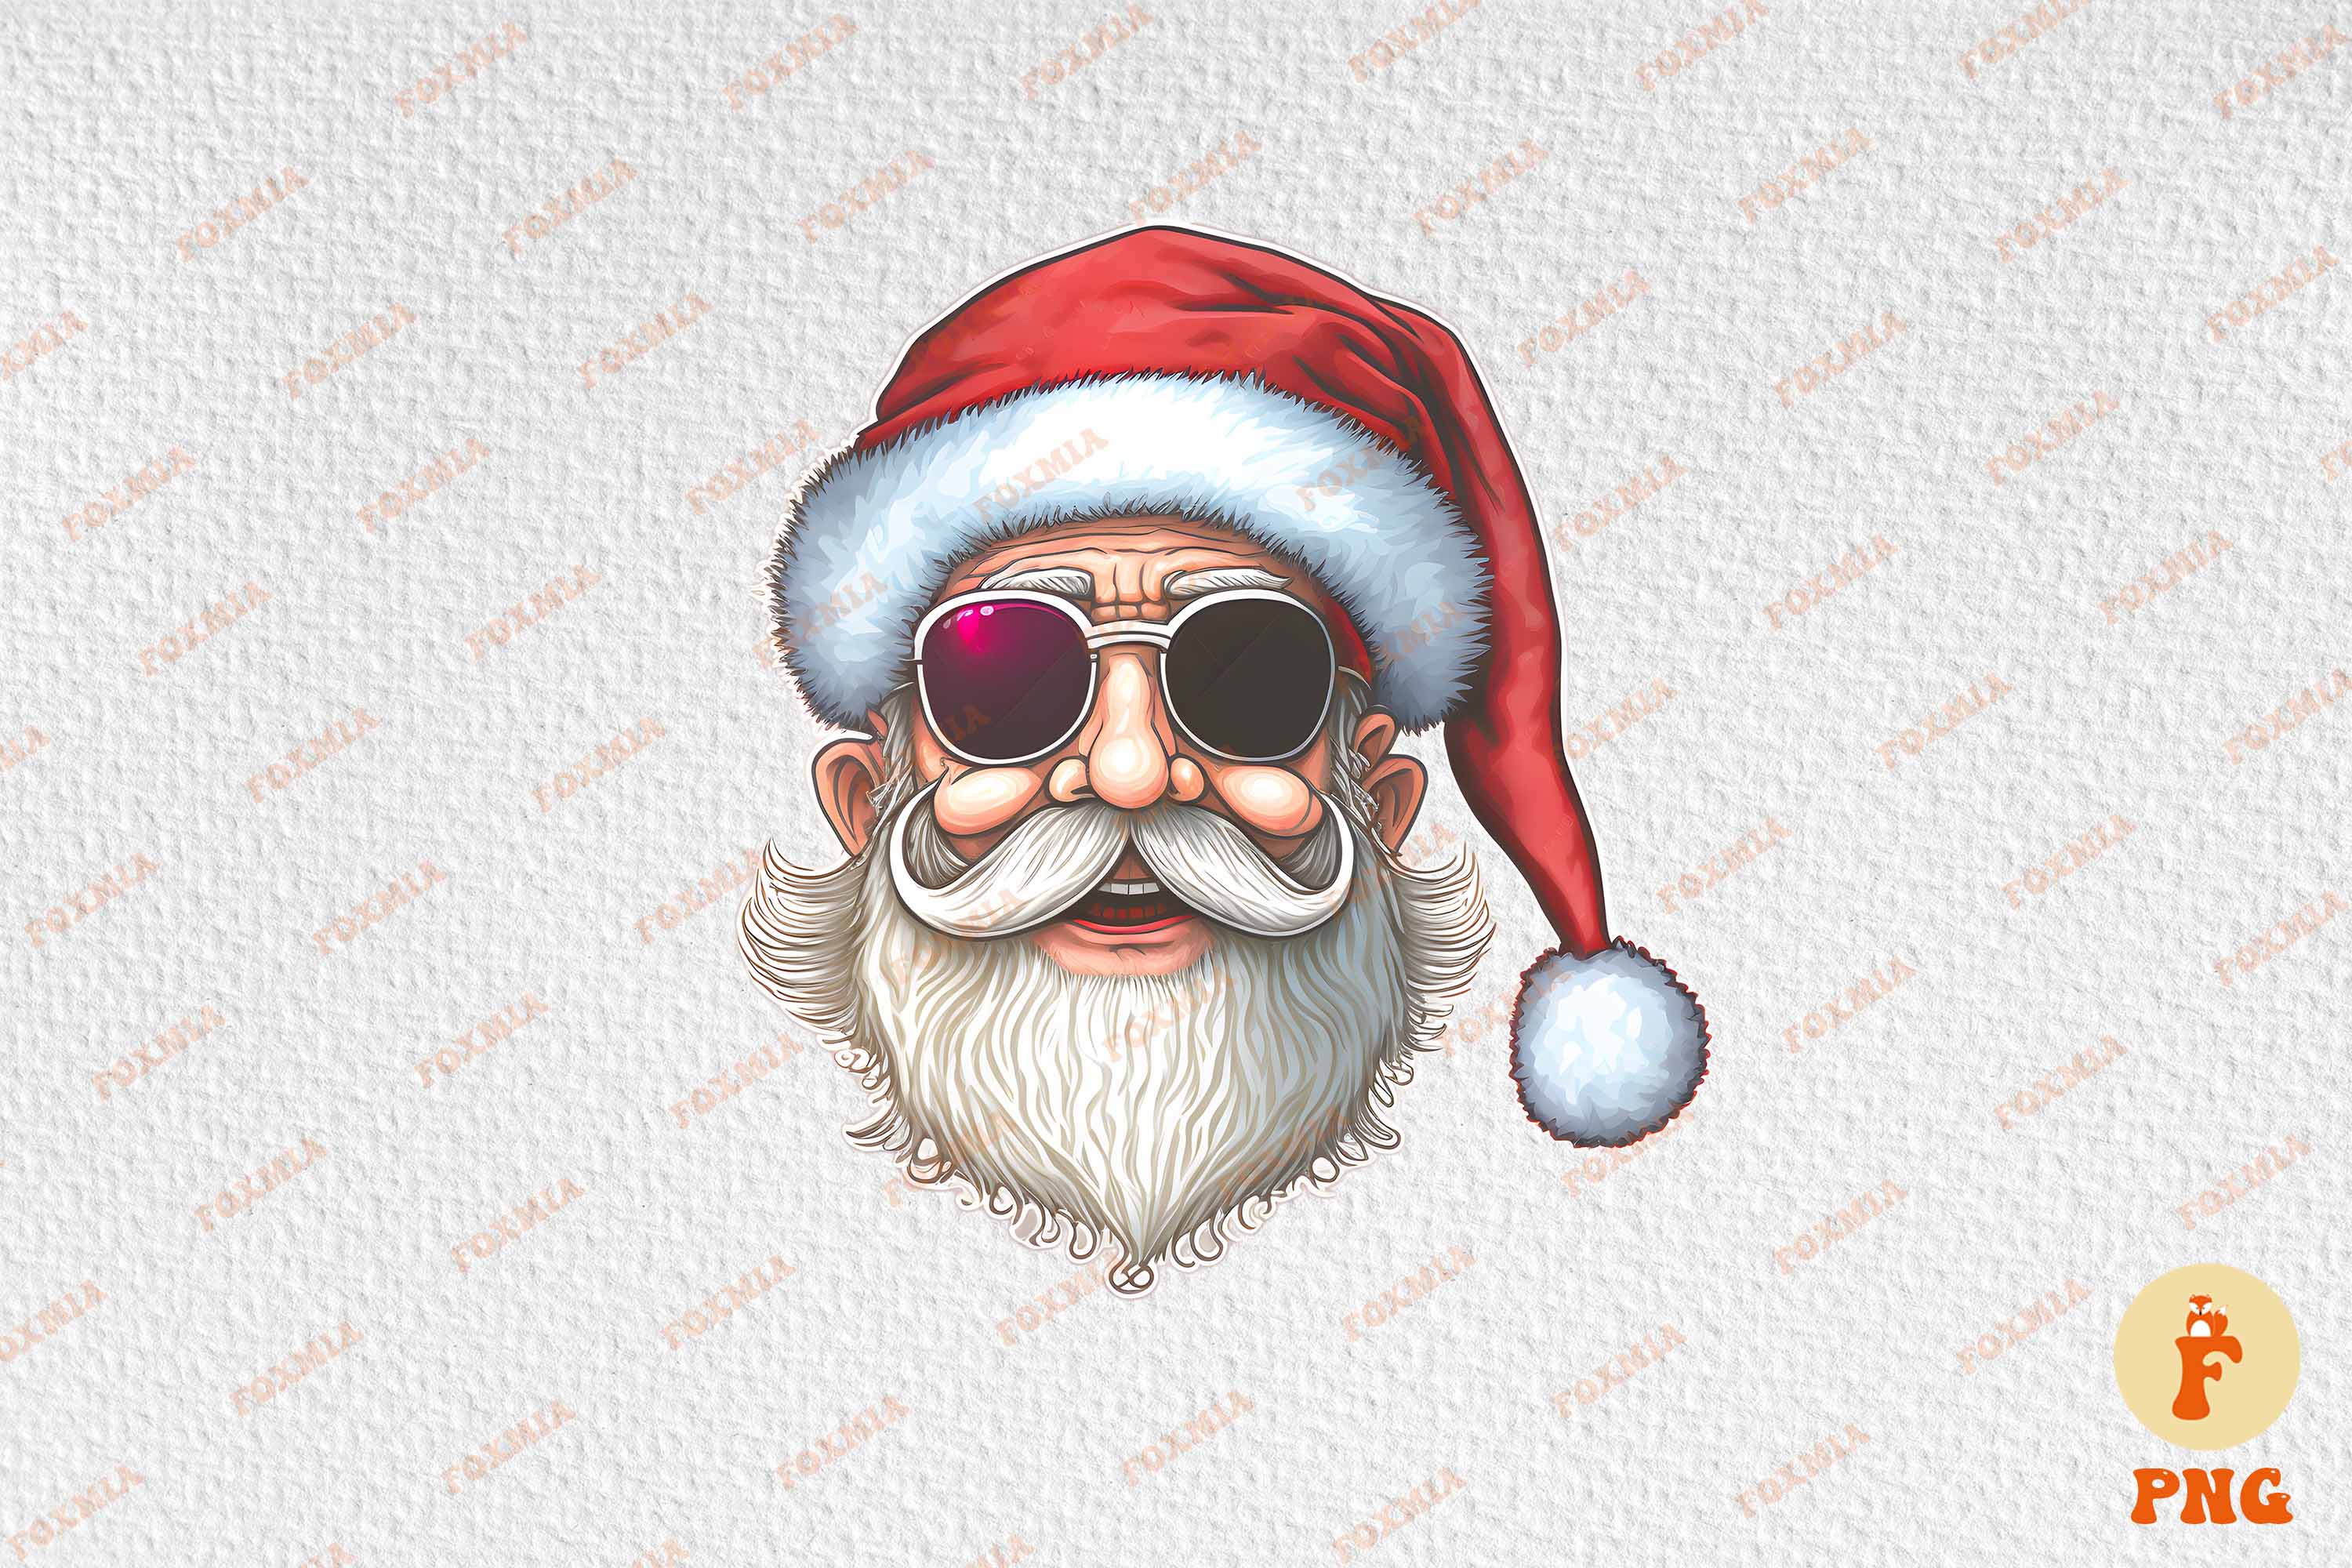 Exquisite image of Santa in sunglasses.